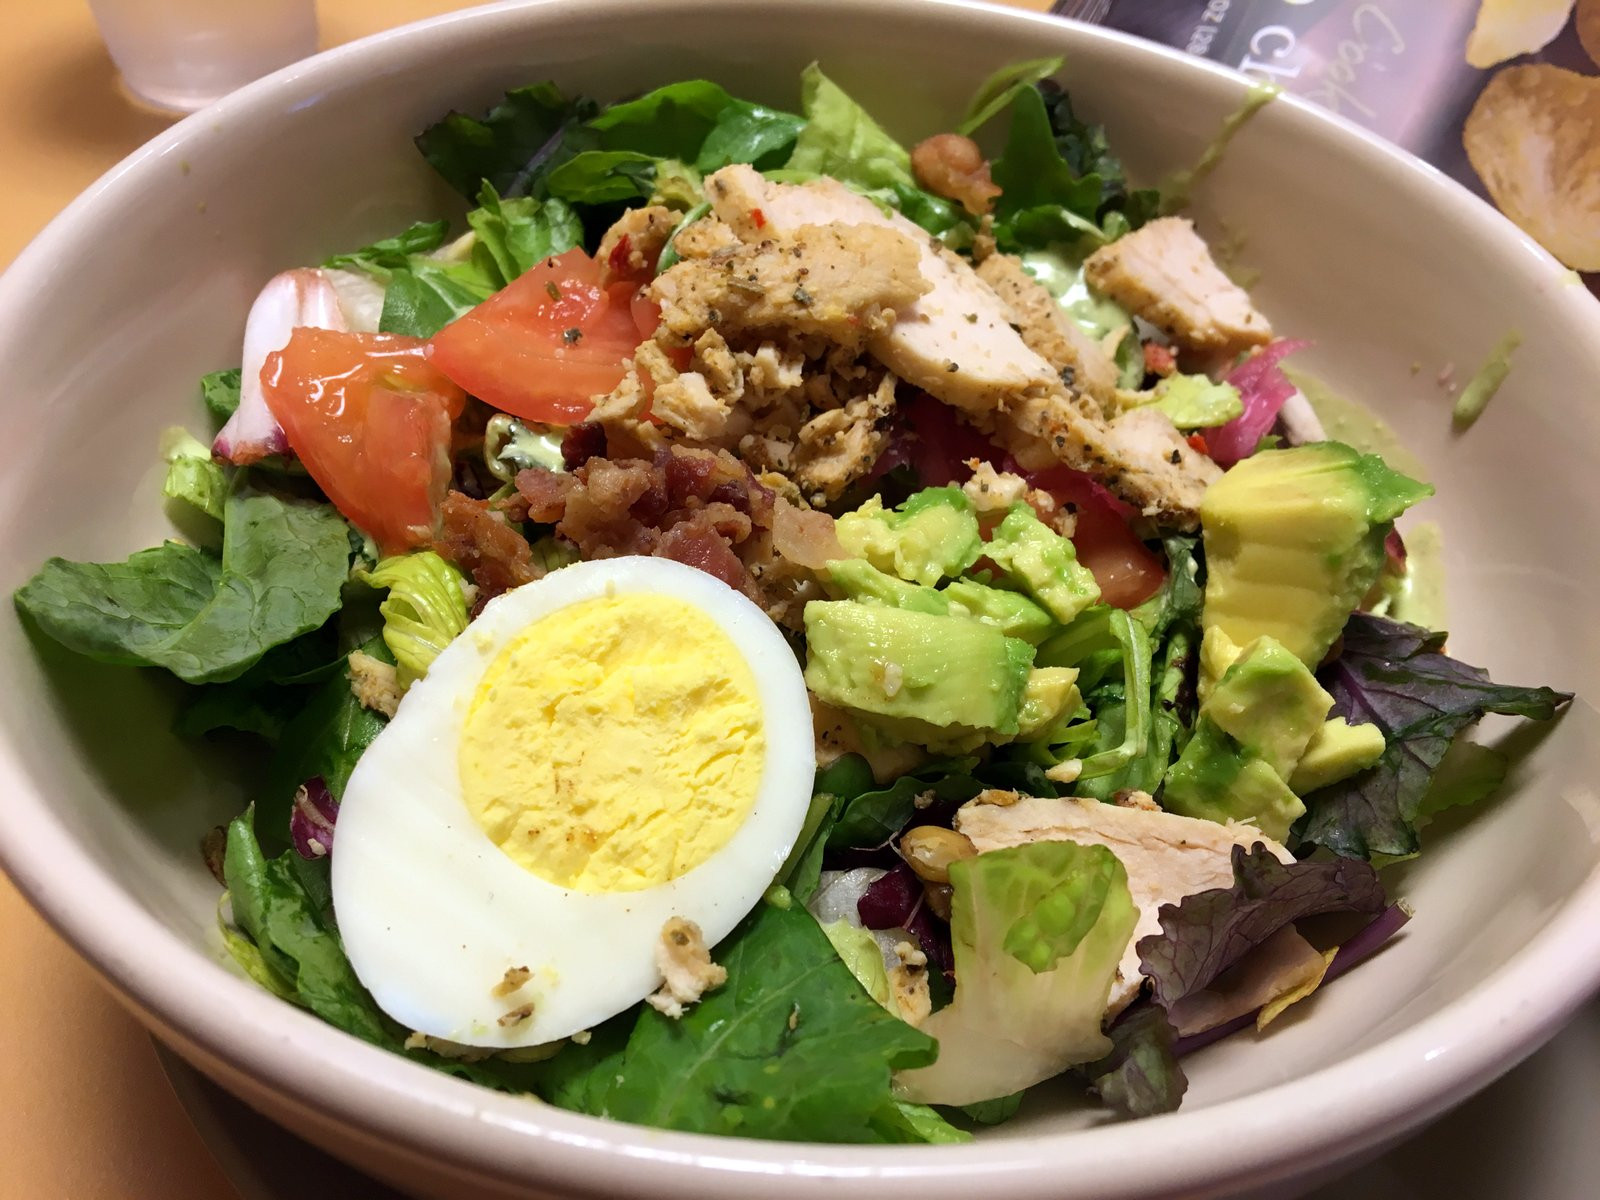 20 Best Ideas Panera Bread Green Goddess Cobb Salad with Chicken - Best ...